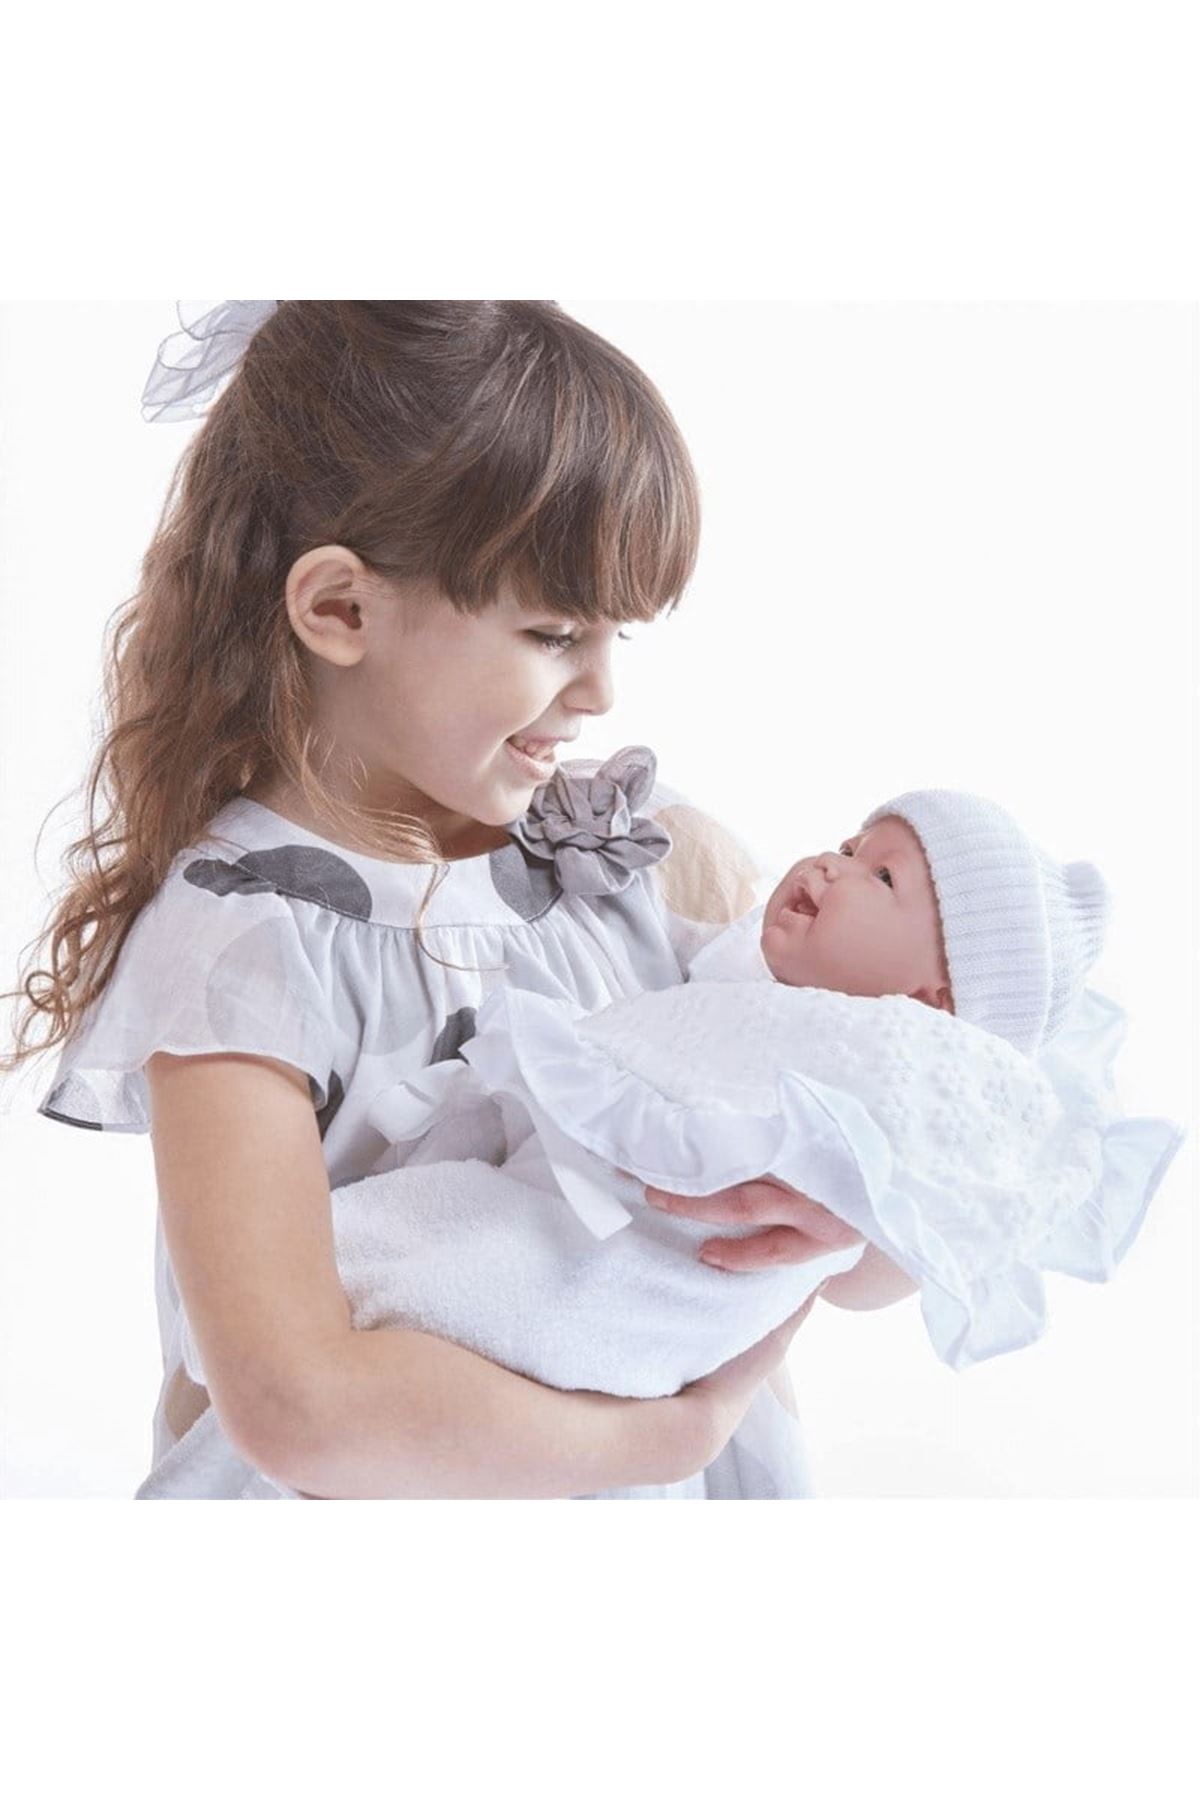 Berenguer Gerçekçi Yenidoğan Oyuncak Bebek 39 cm ve Beyaz Kundak Seti